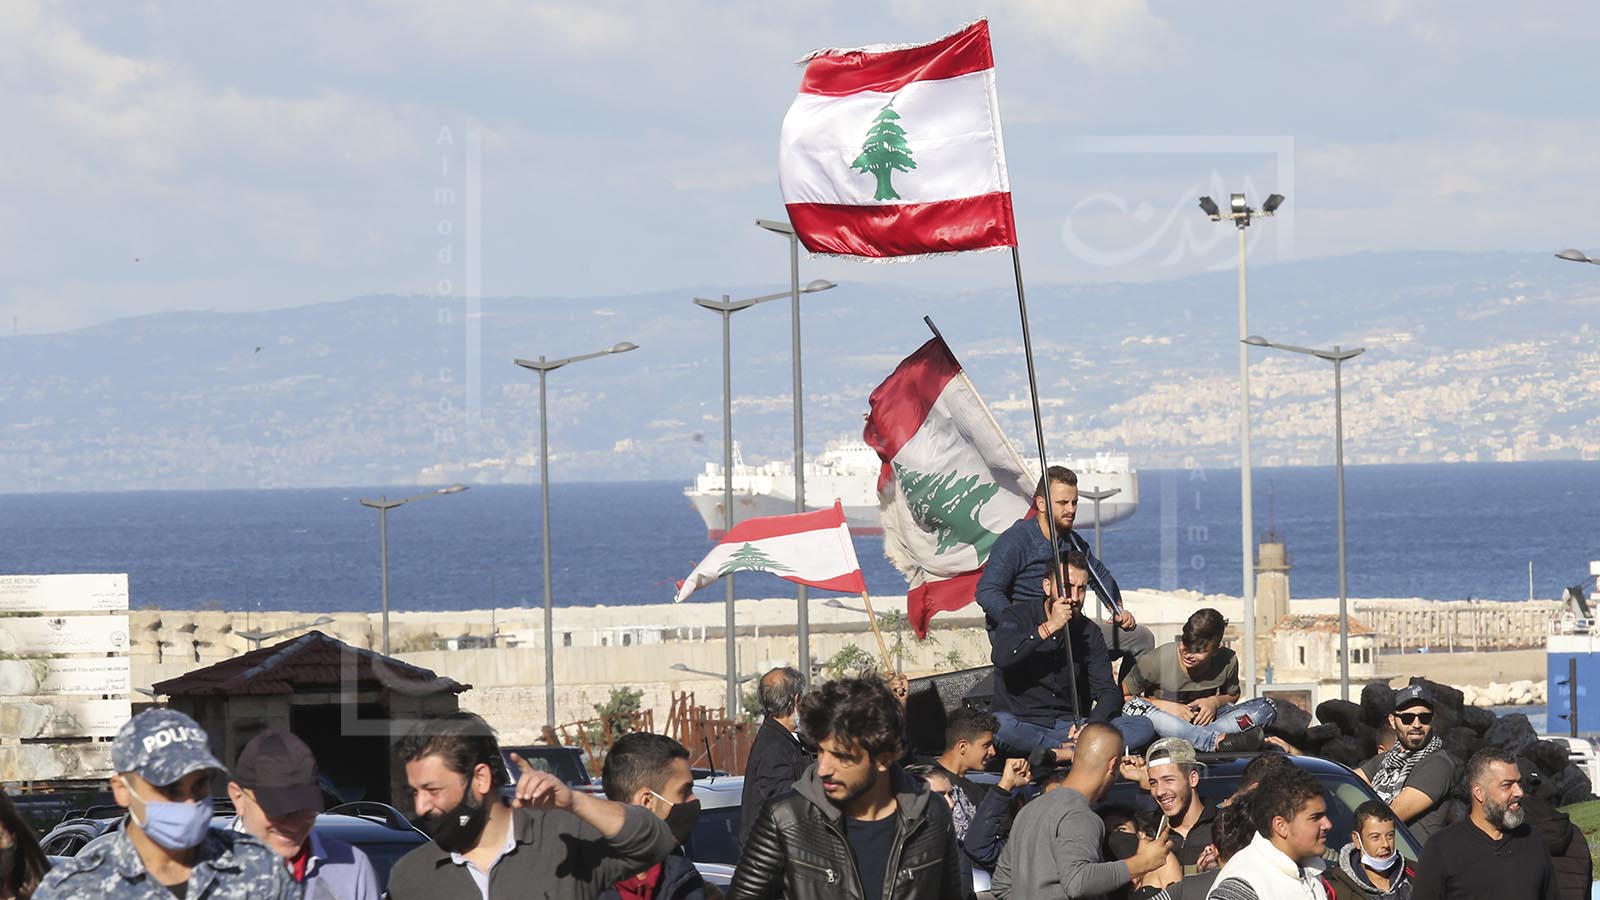 بؤس الحكم وبأس الصيغة اللبنانية